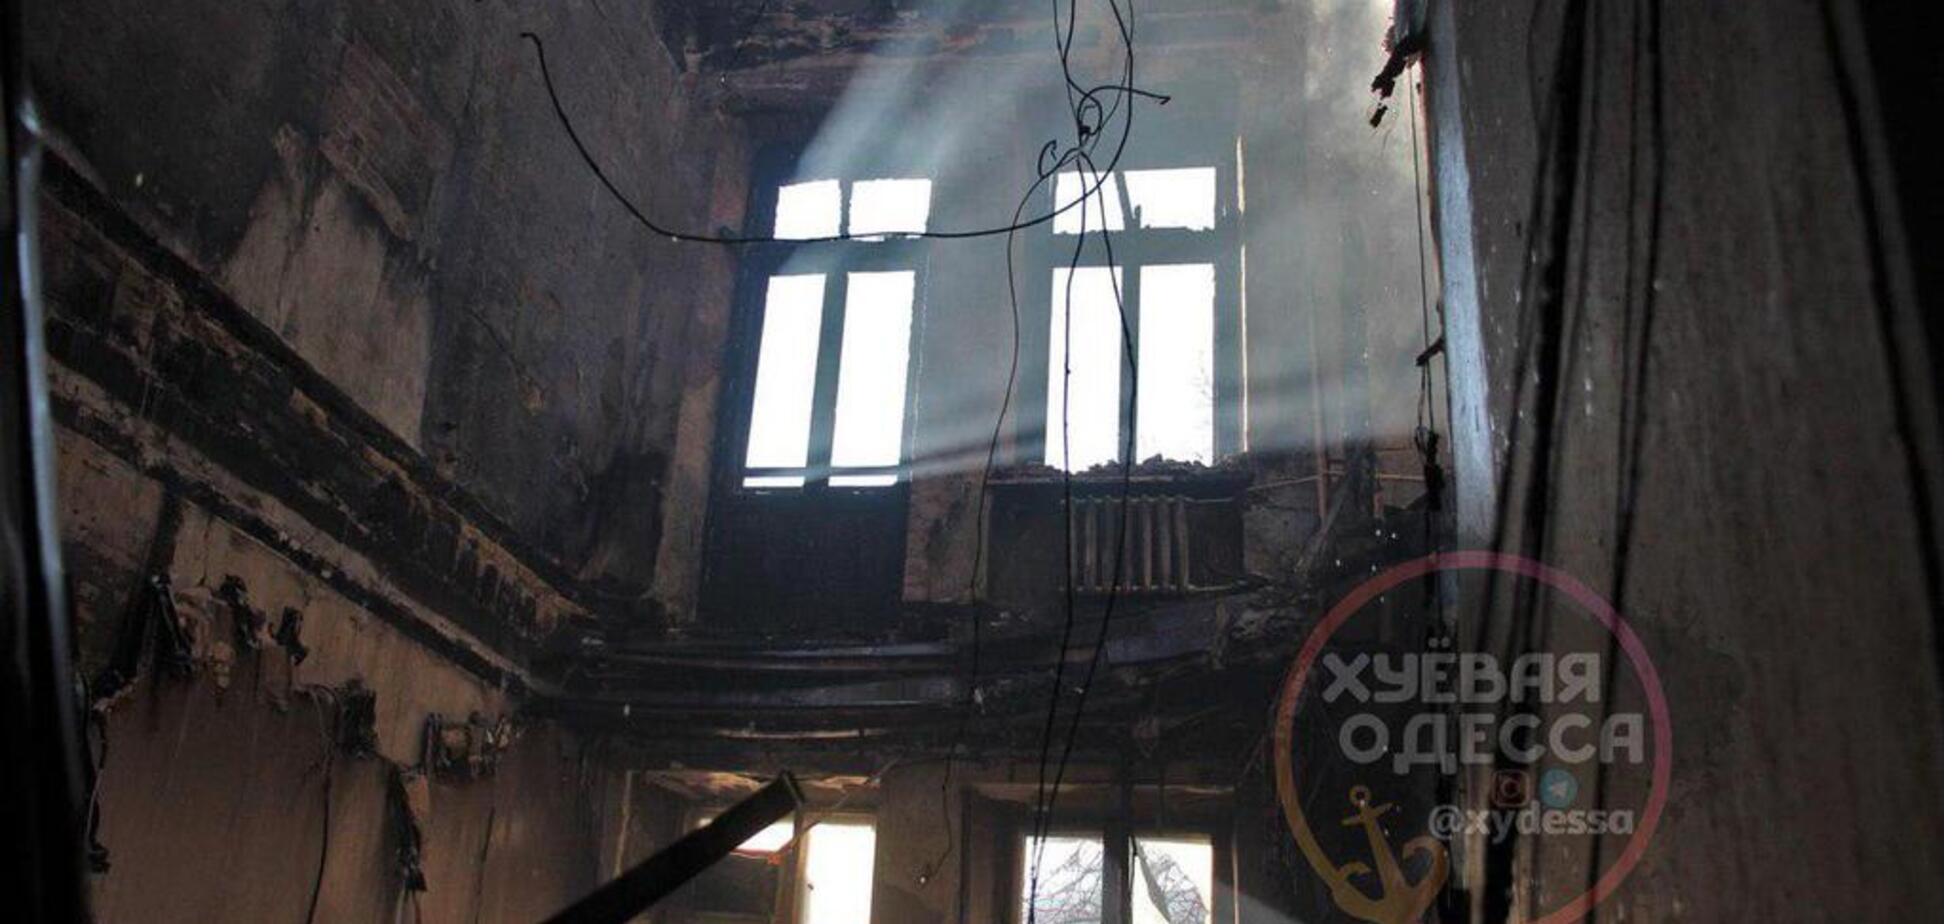 Рухнувшие перекрытия, залитые полы: экстремалы засняли сгоревший колледж изнутри и с высоты - фото, видео